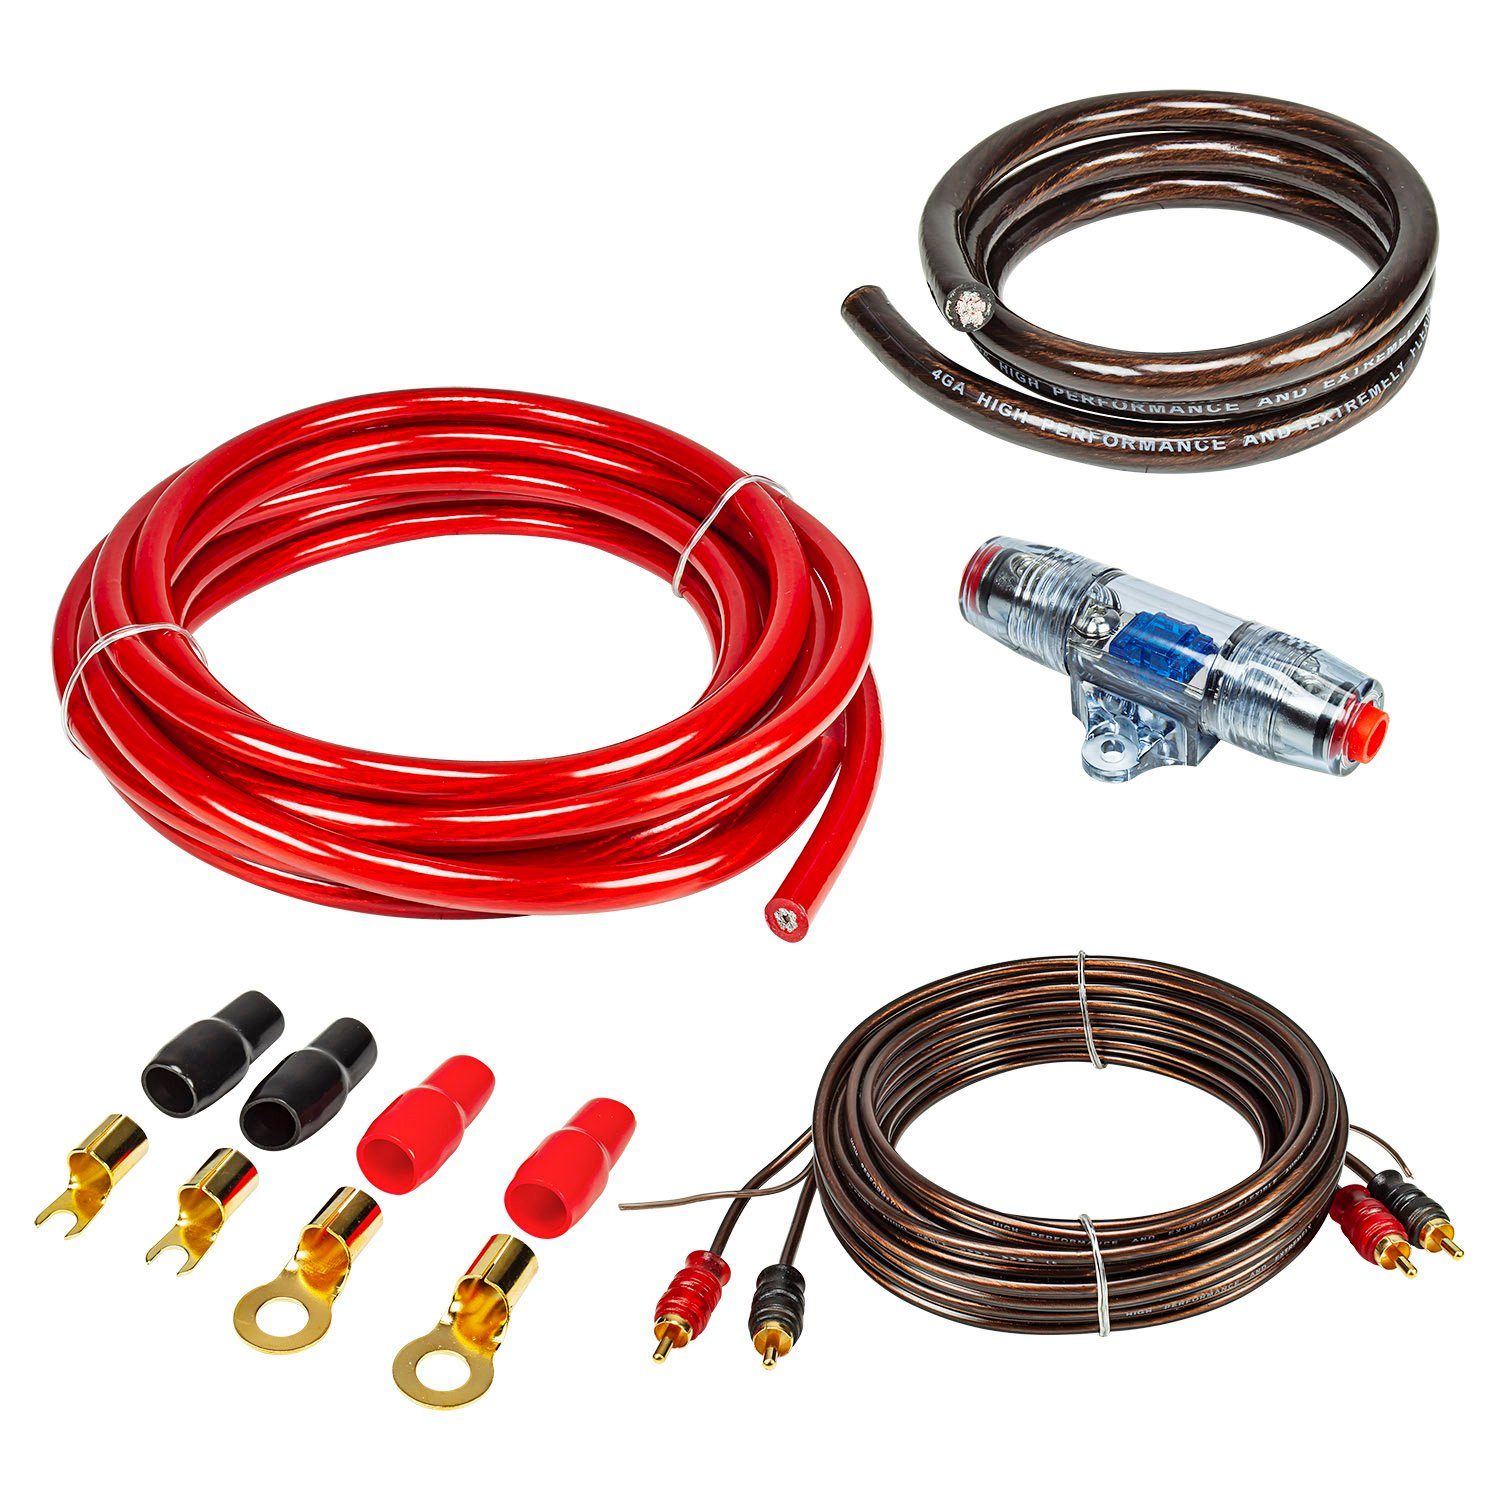 Verstärker Kabelsatz, Anschluss-Set Auto Verstärker Kabel Set